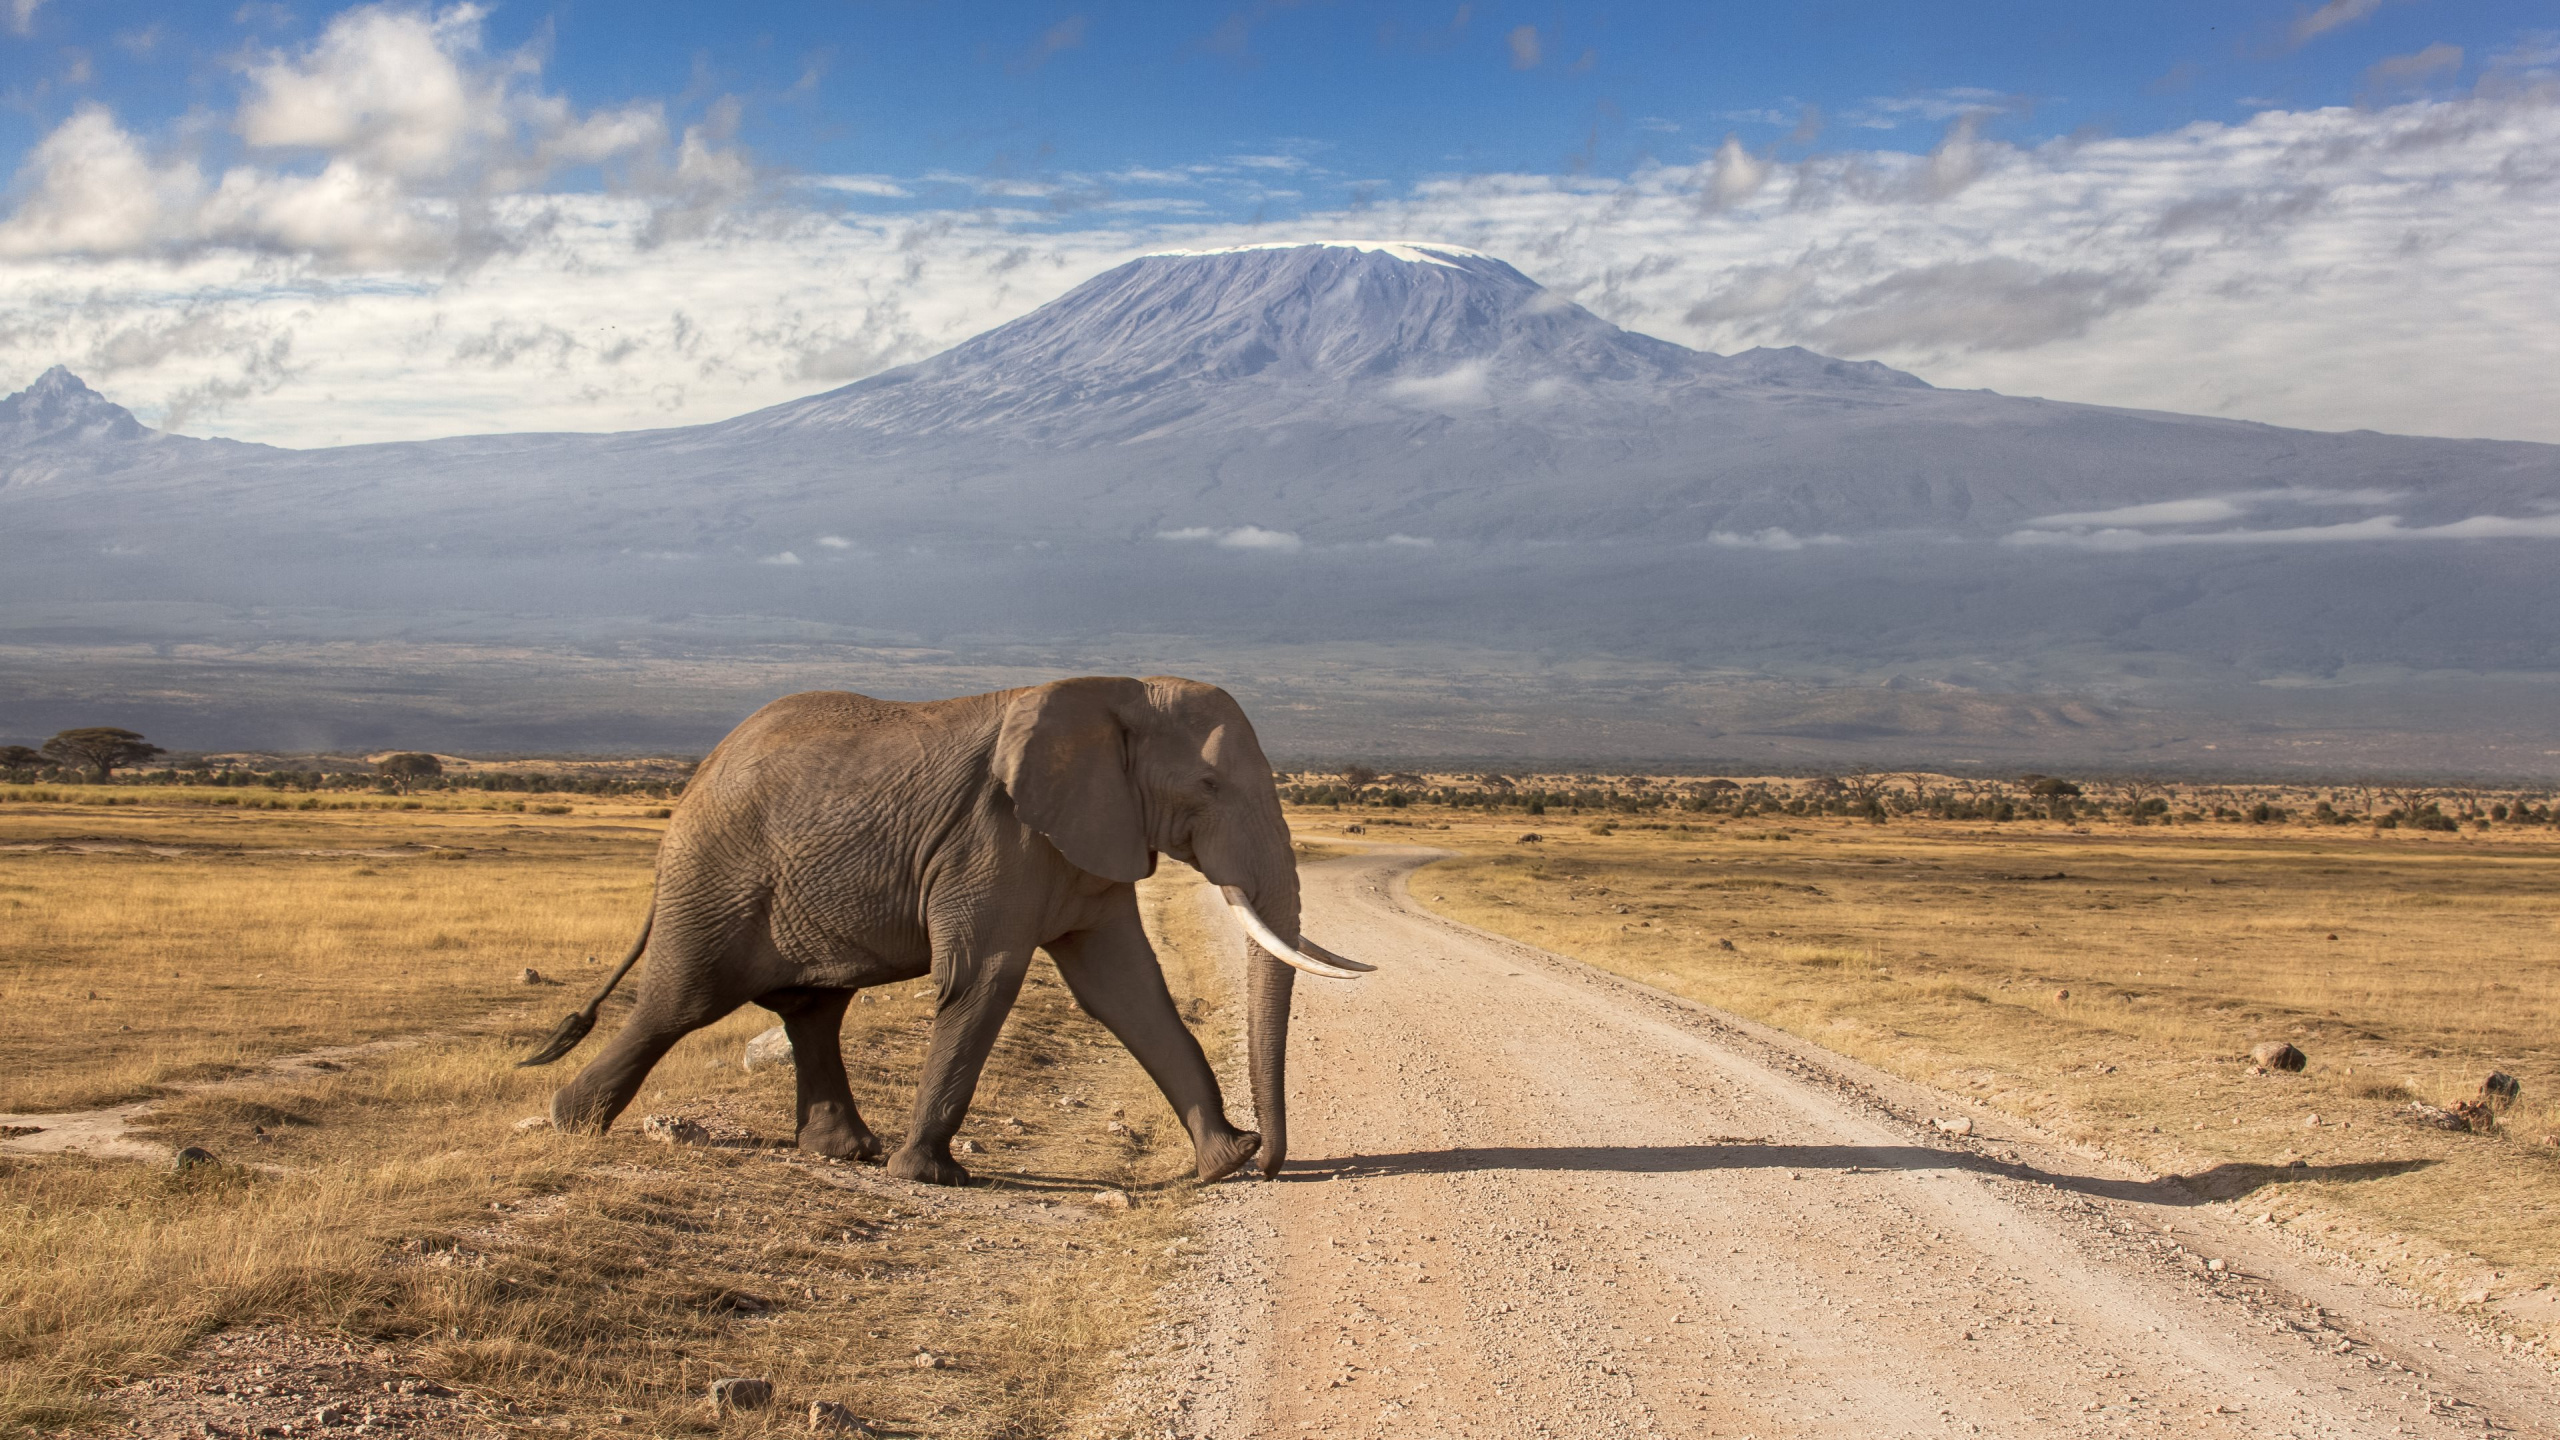 Elefanten Gehen Tagsüber Auf Der Straße. Wallpaper in 2560x1440 Resolution